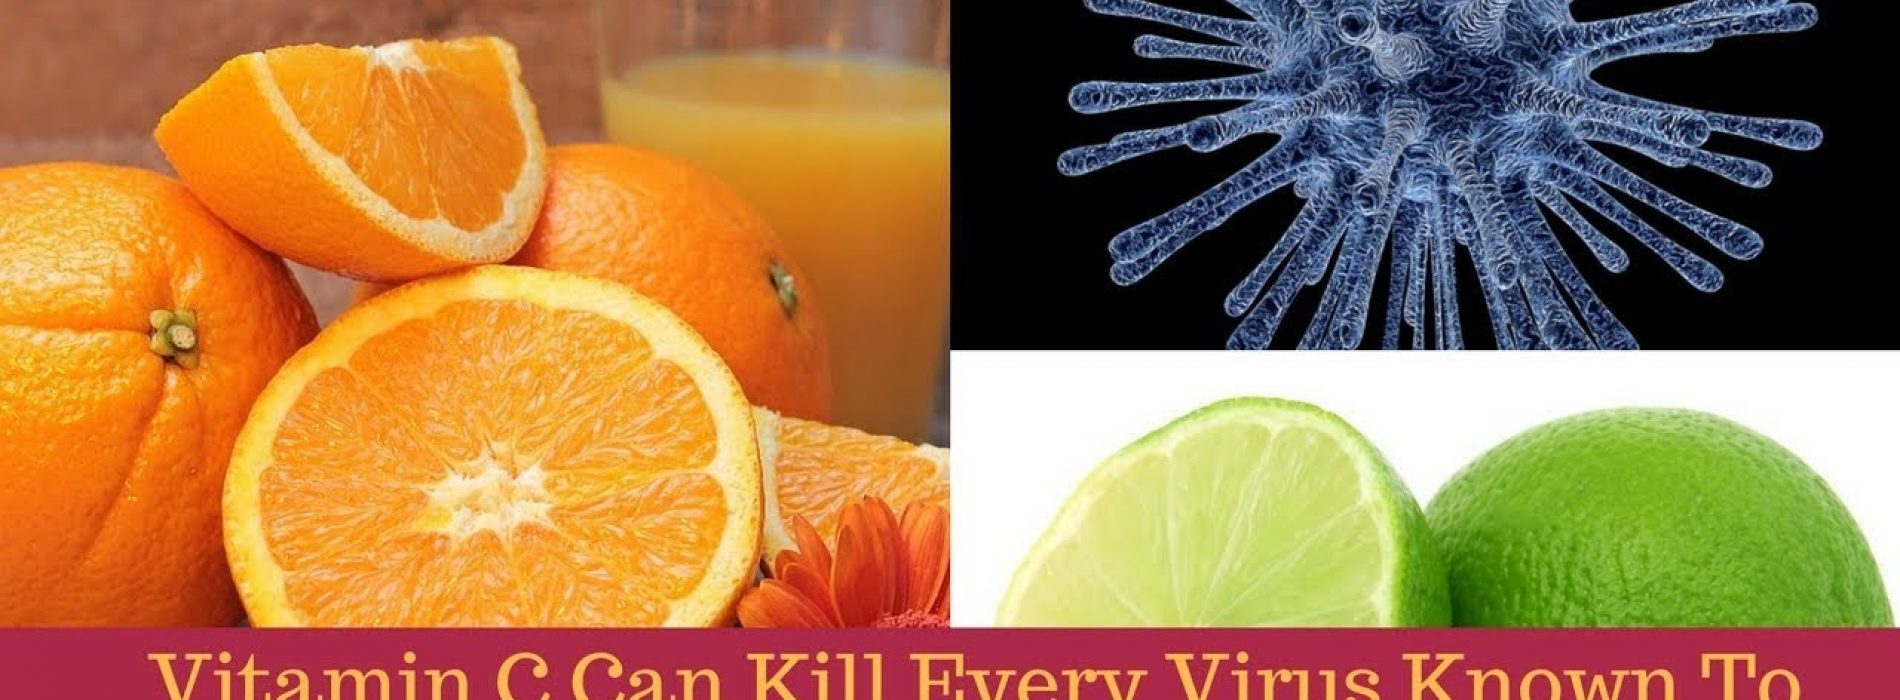 ‘Vitamine C’ kan elk virus doden dat bij de mensheid bekend is